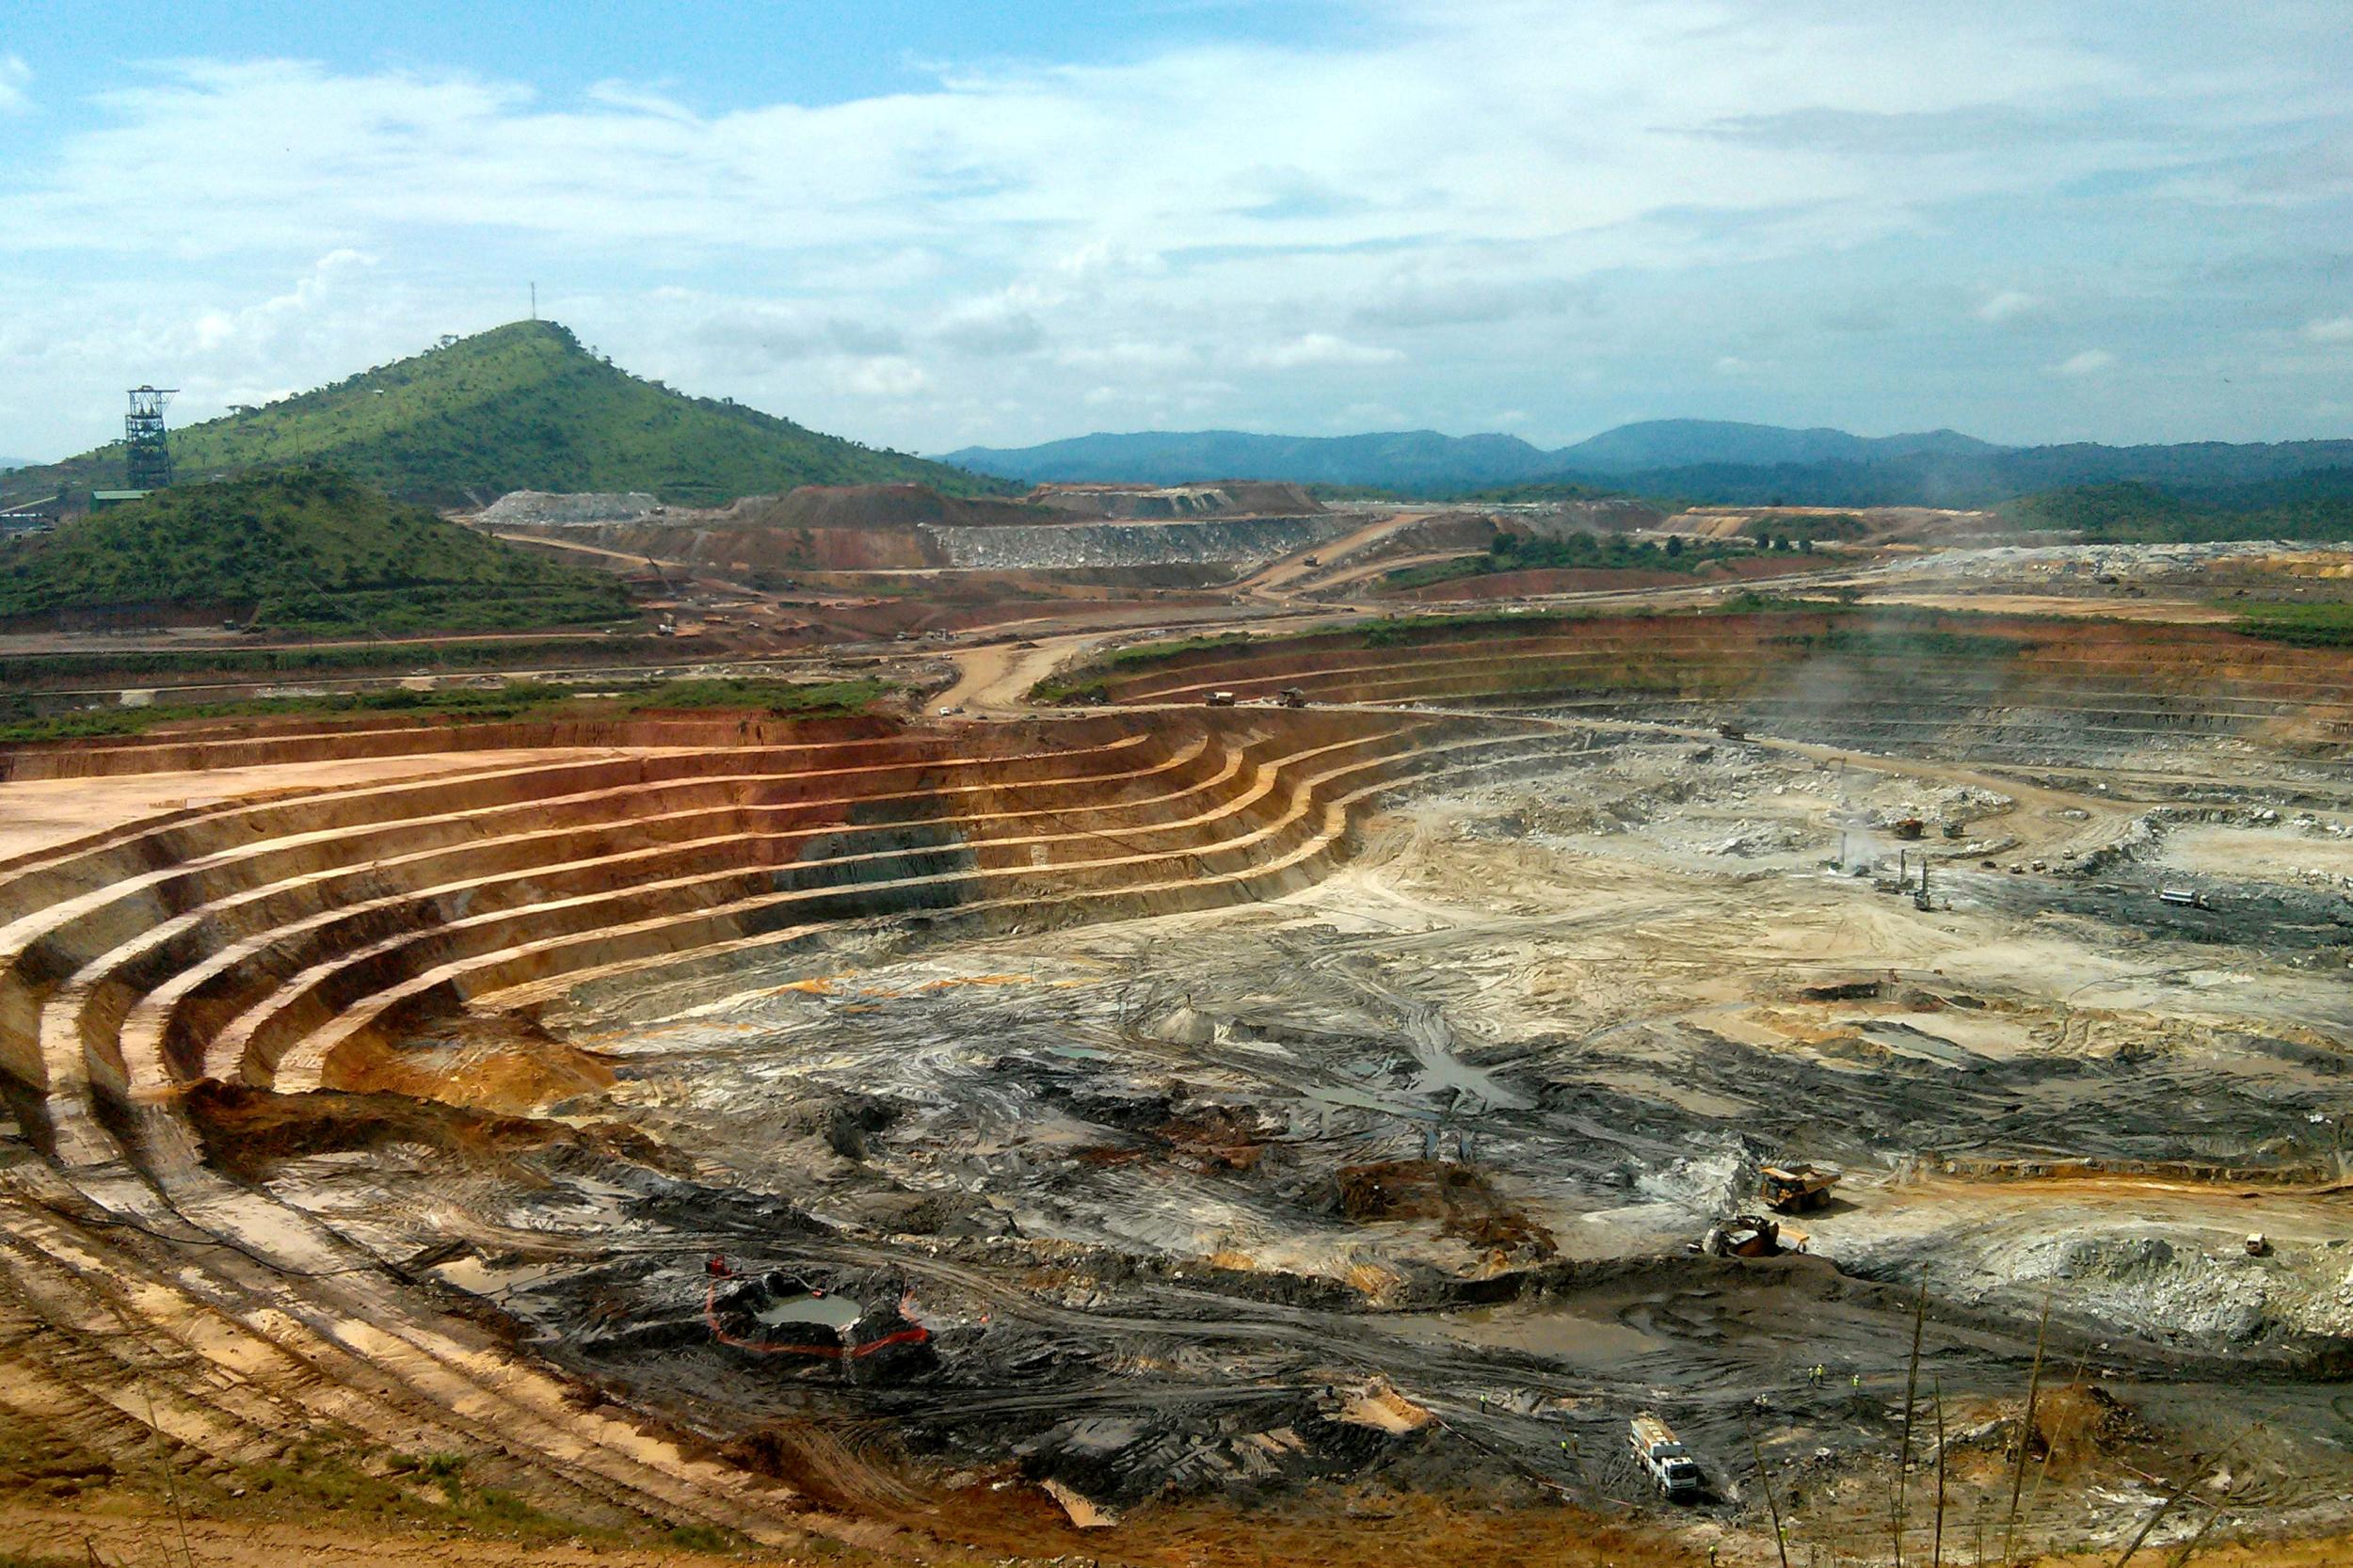 Randgold's operations include the Kibali mine in the Democratic Republic of Congo